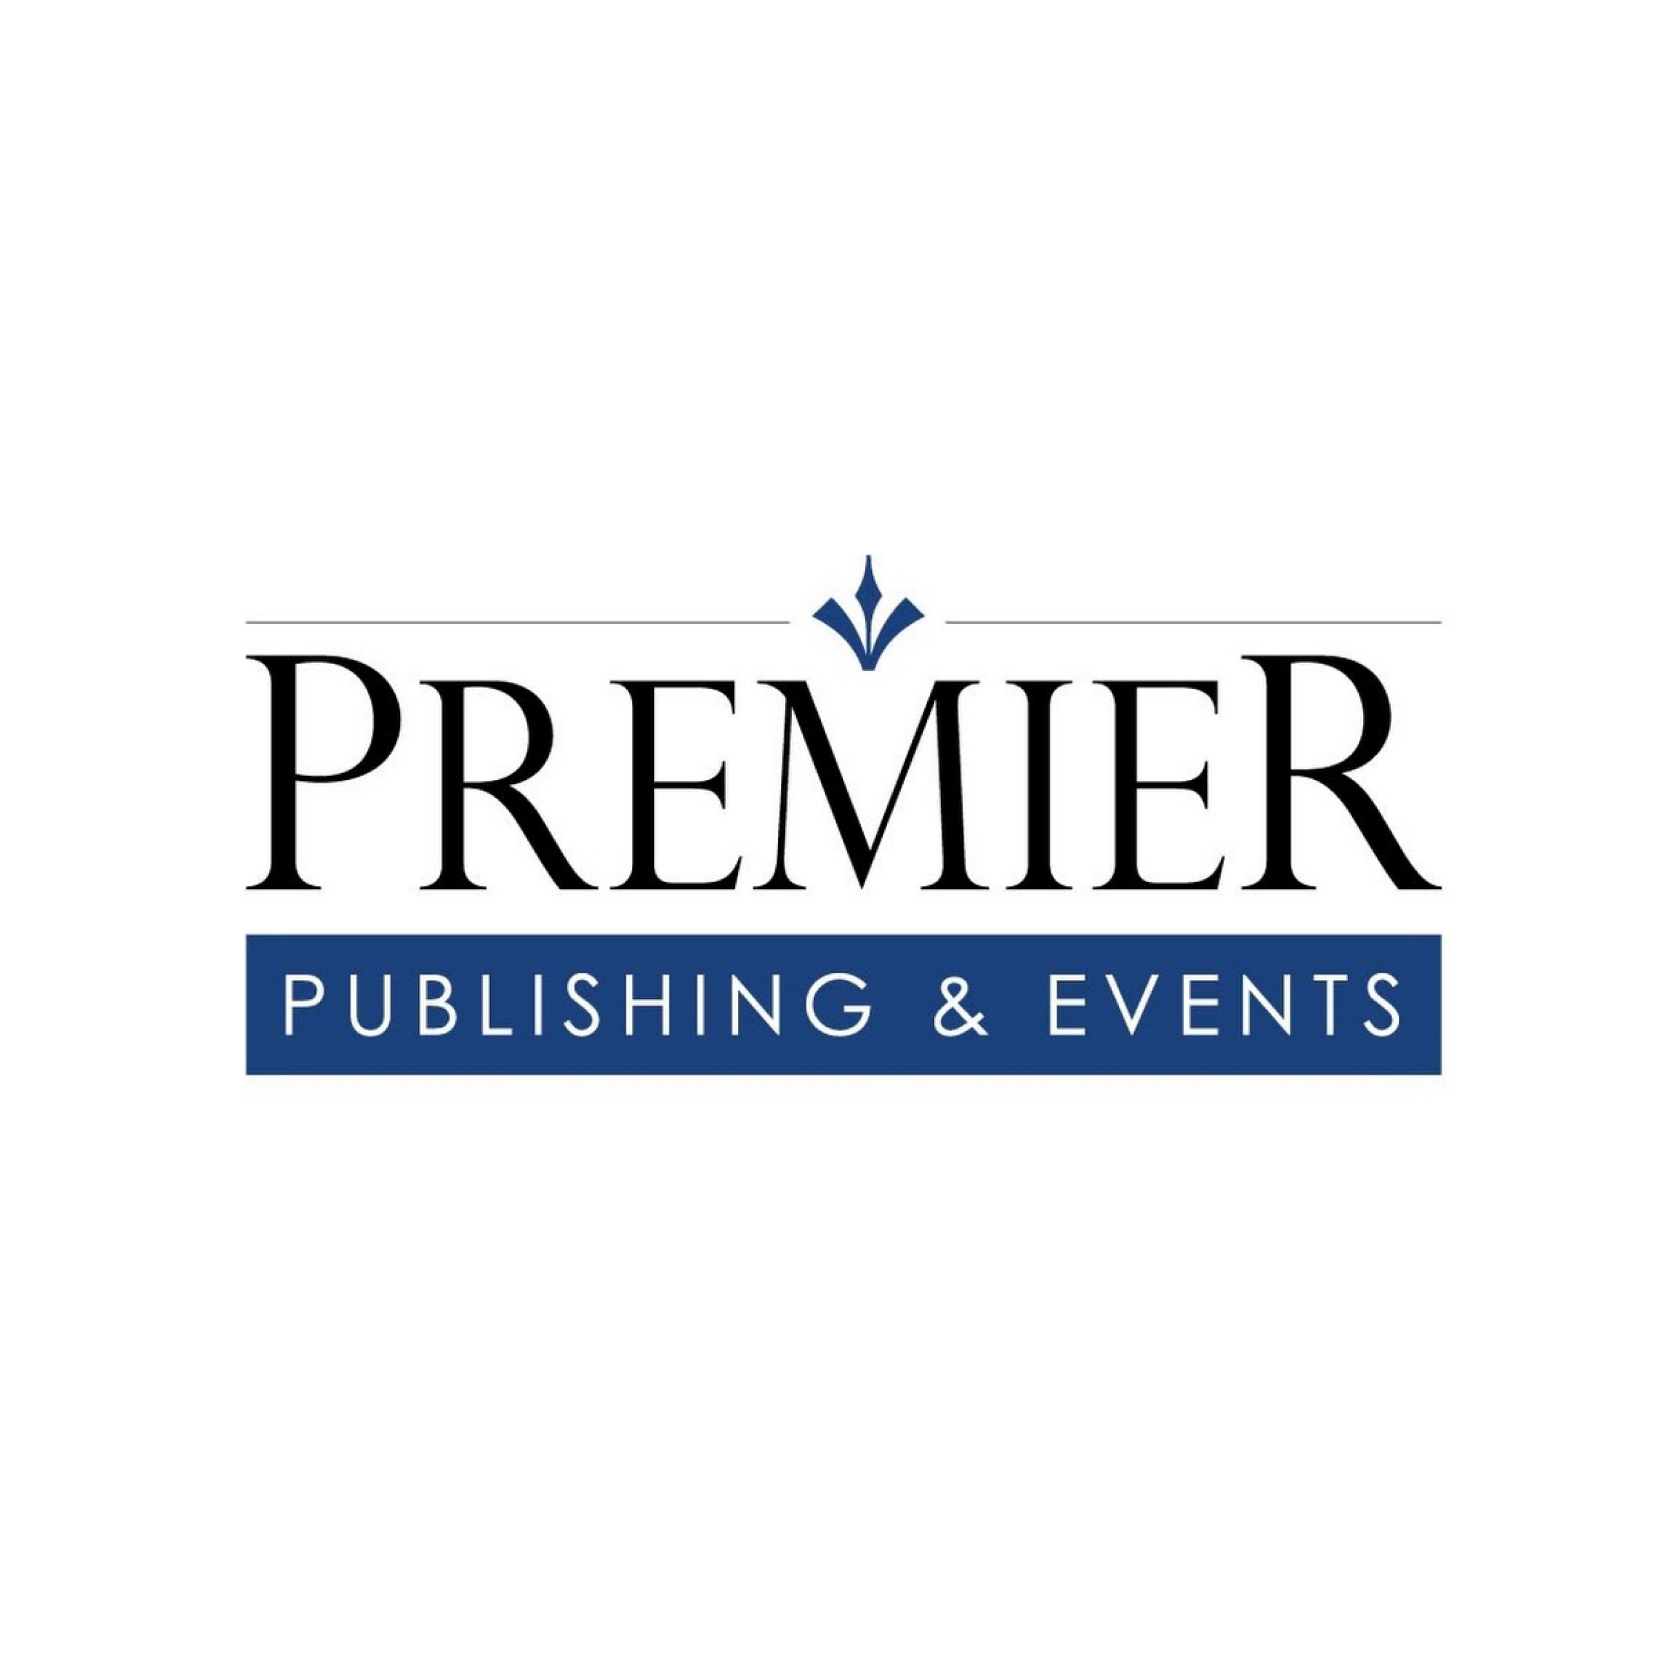 Premier Publishing & Events